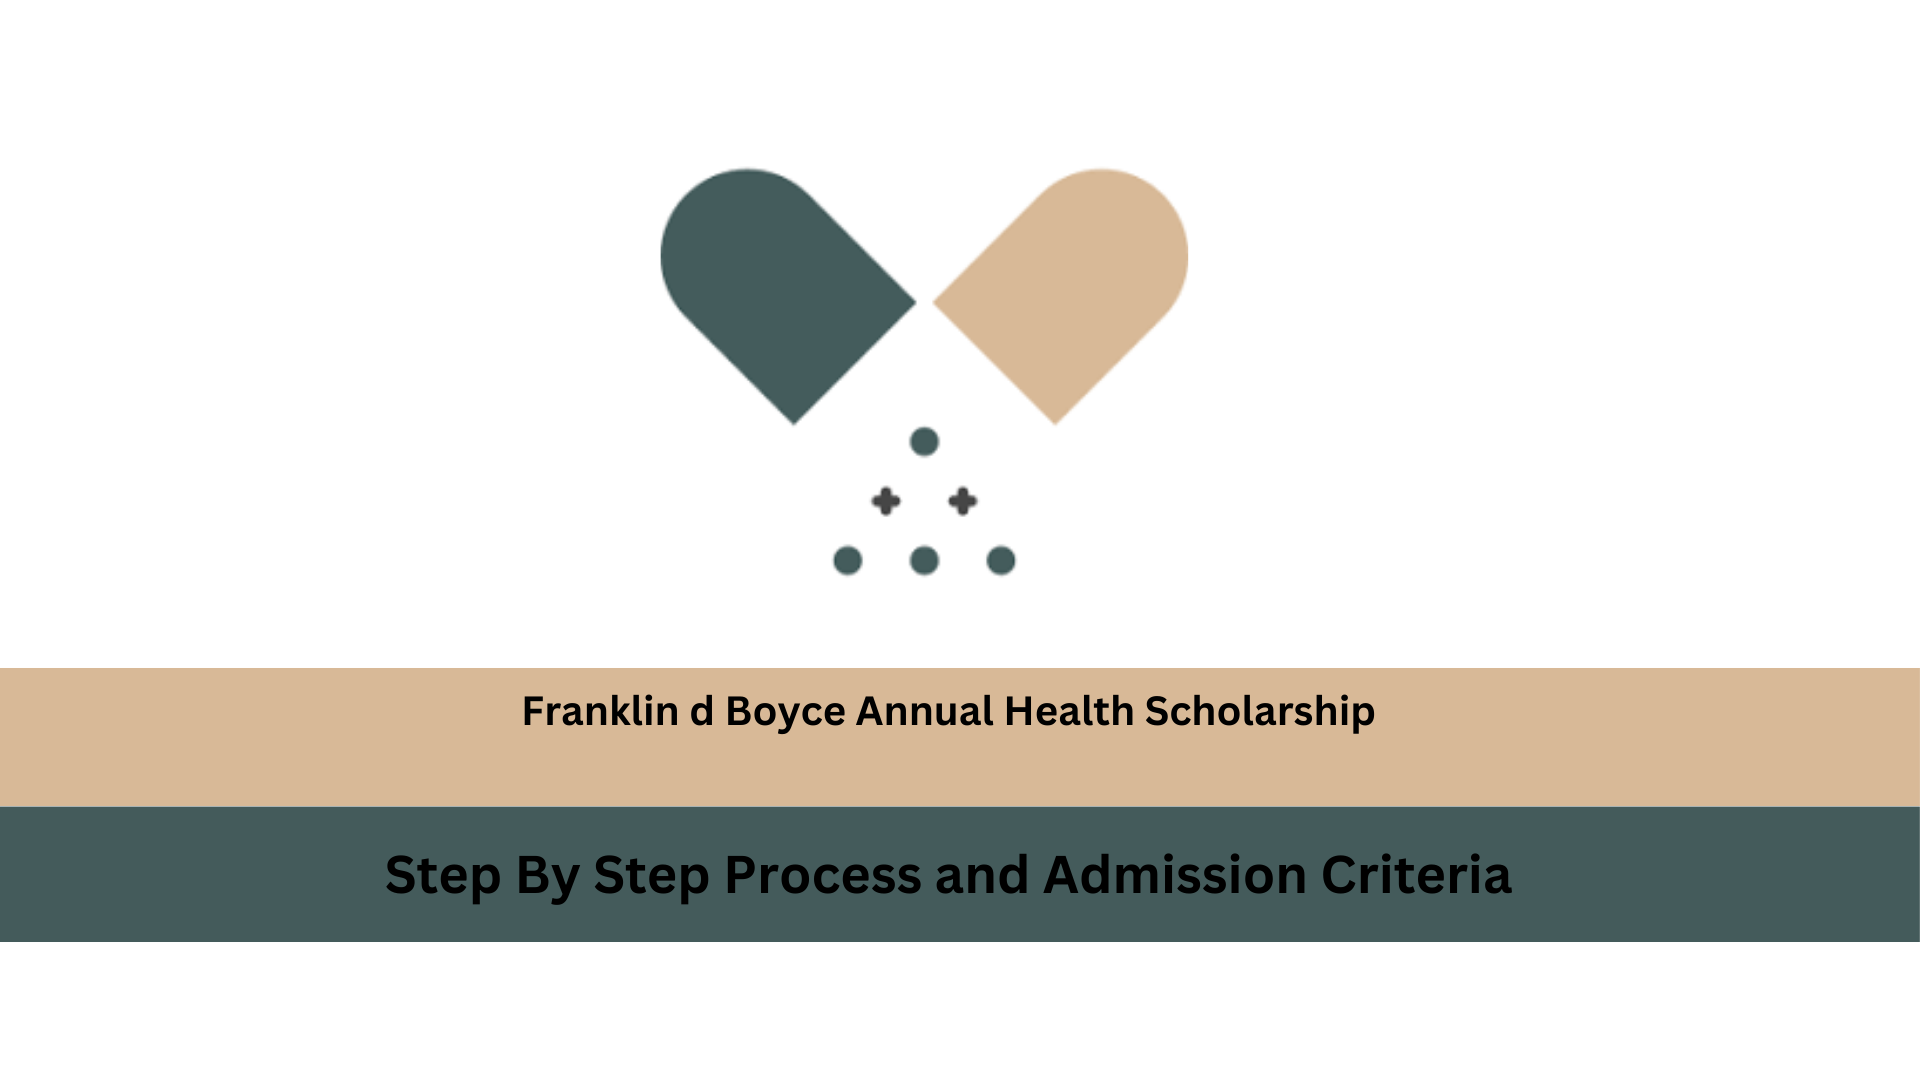 Franklin d Boyce Annual Health Scholarship